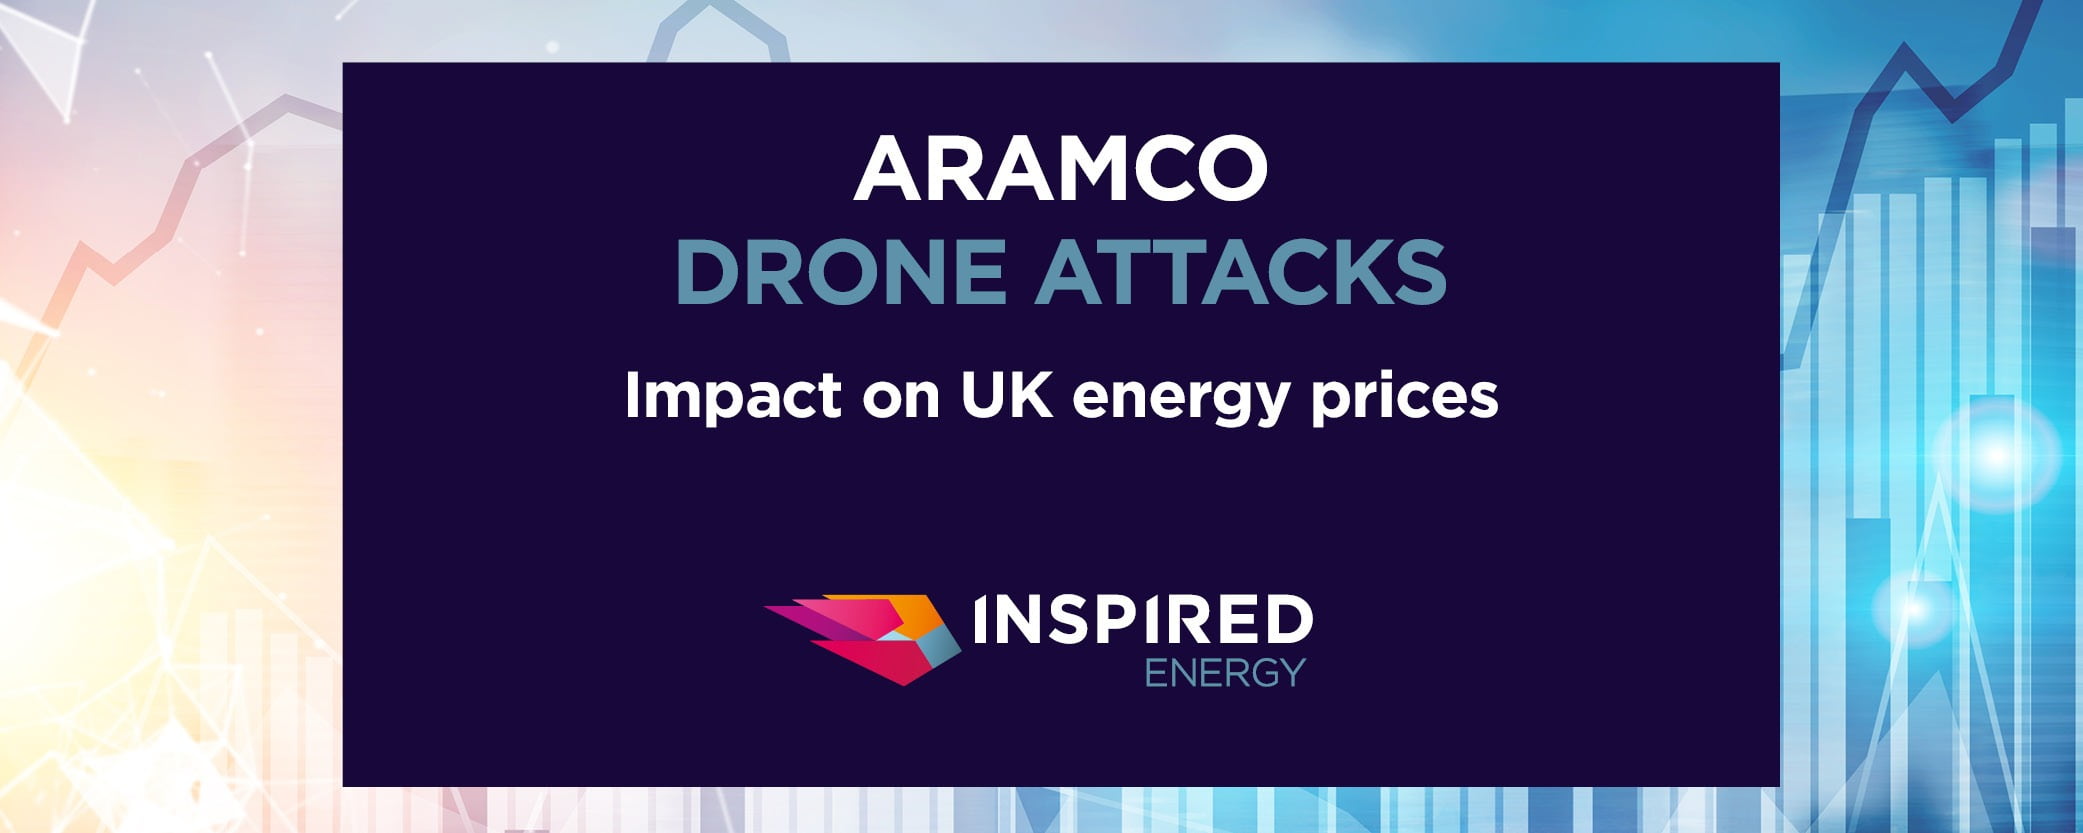 Aramco-Drone-Attack